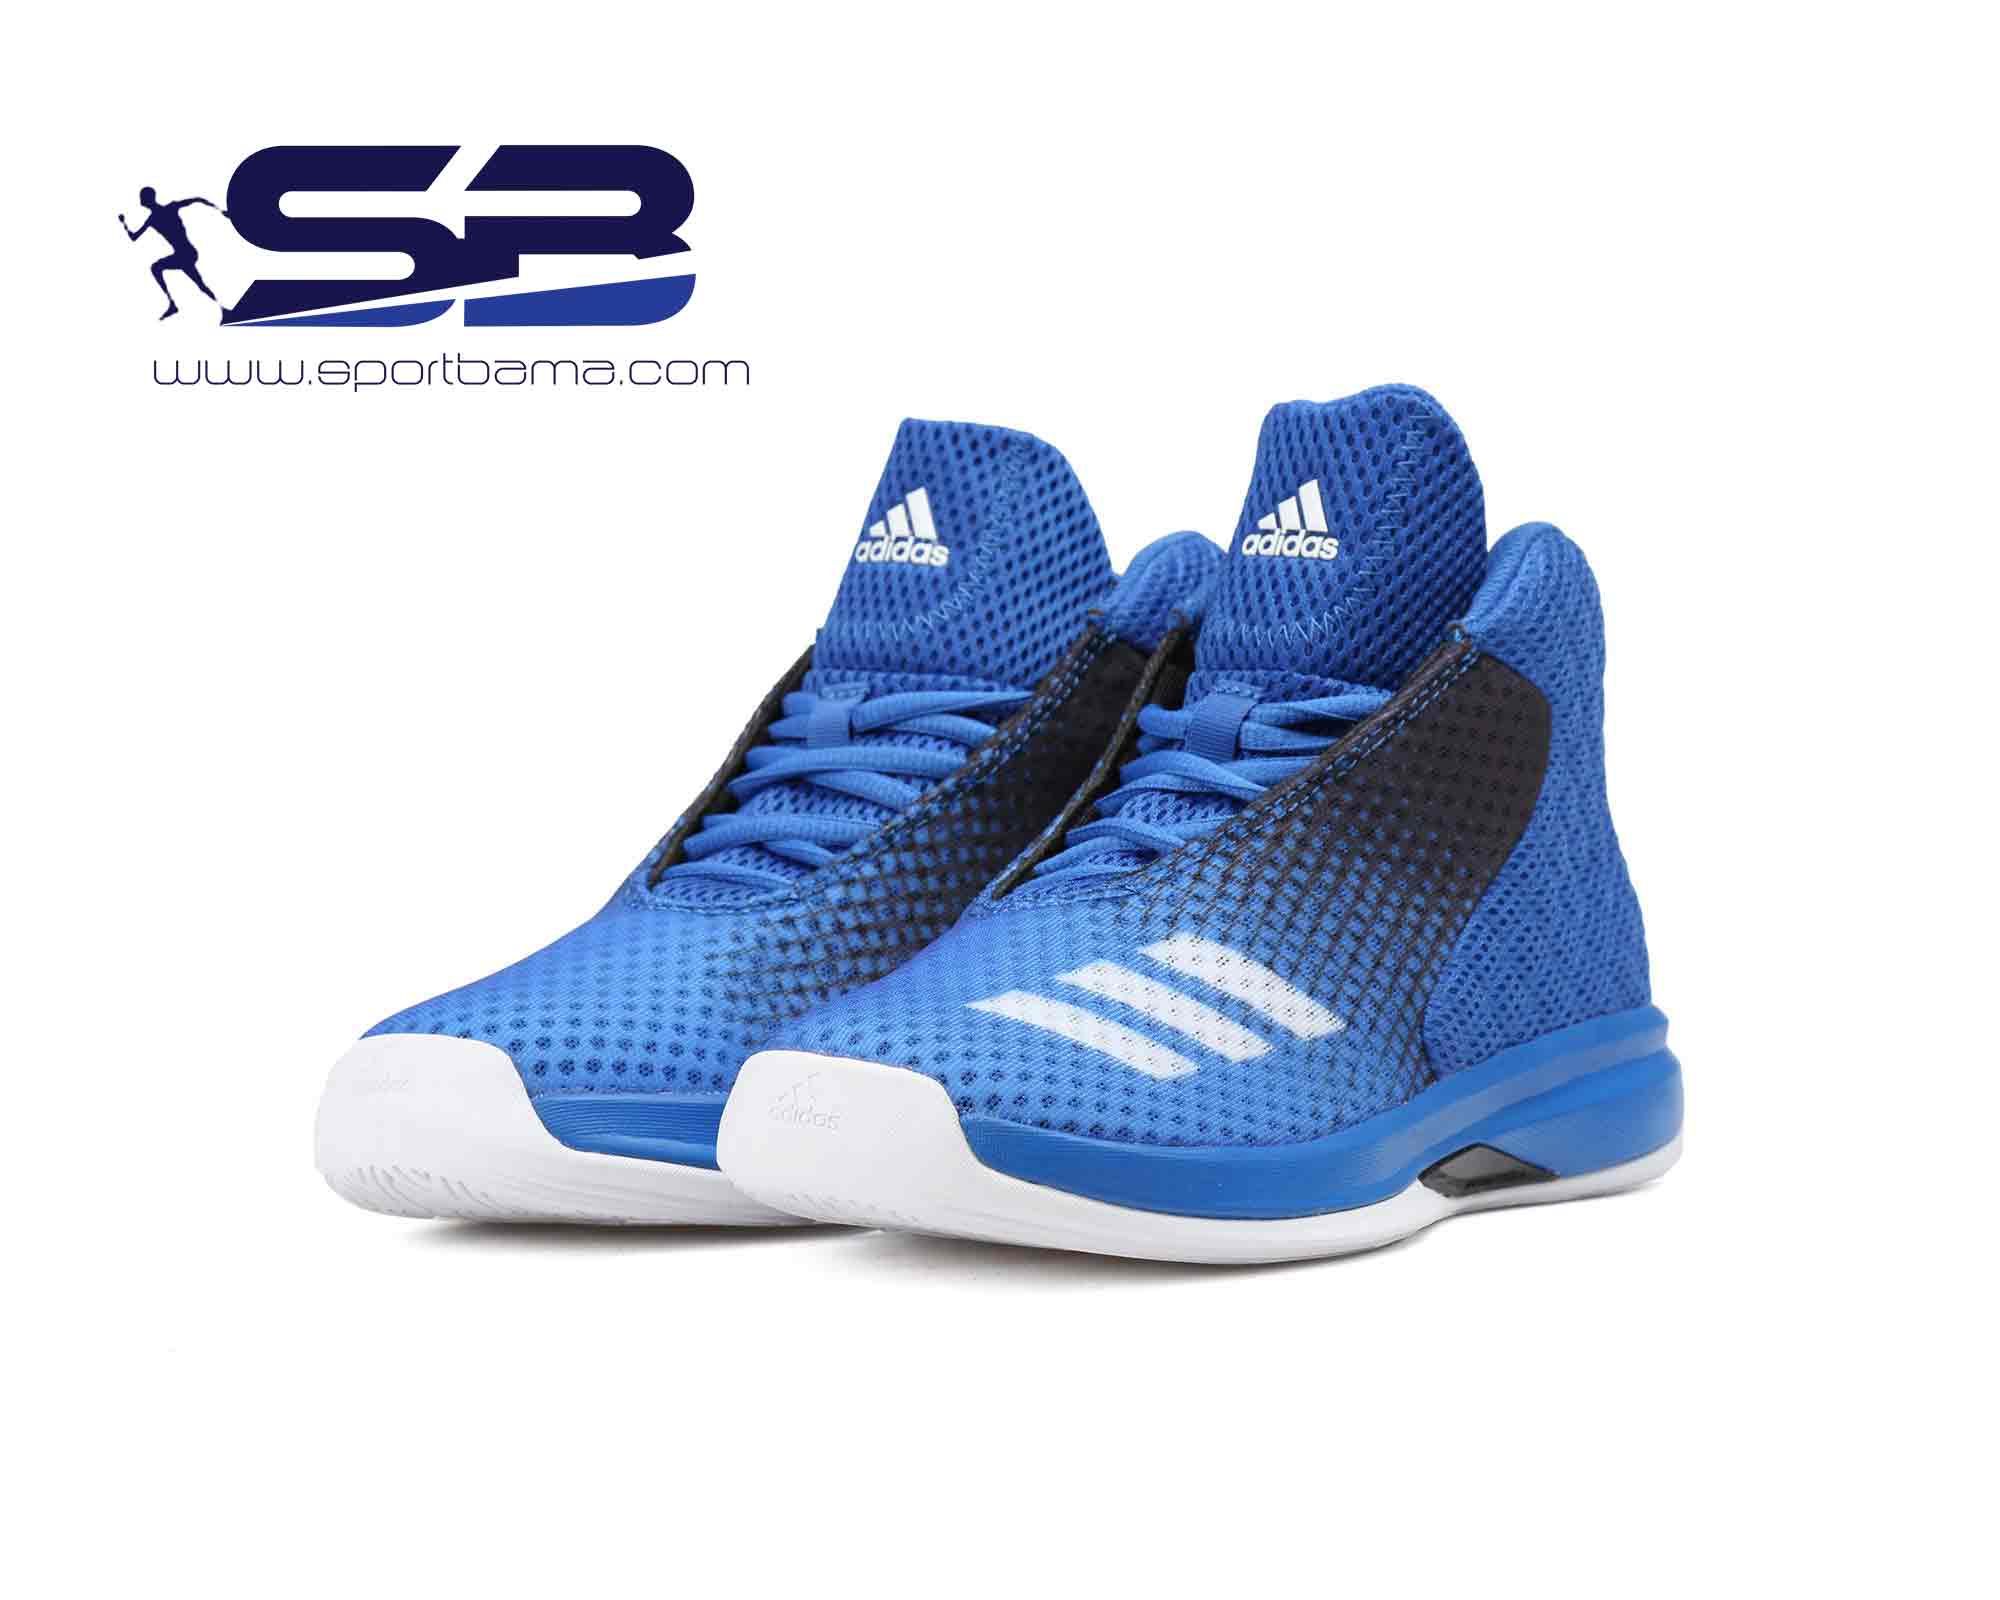  خرید  کفش کتانی اورجینال ادیداس مخصوص بسکتبال   adidas basketball shoes aq7950